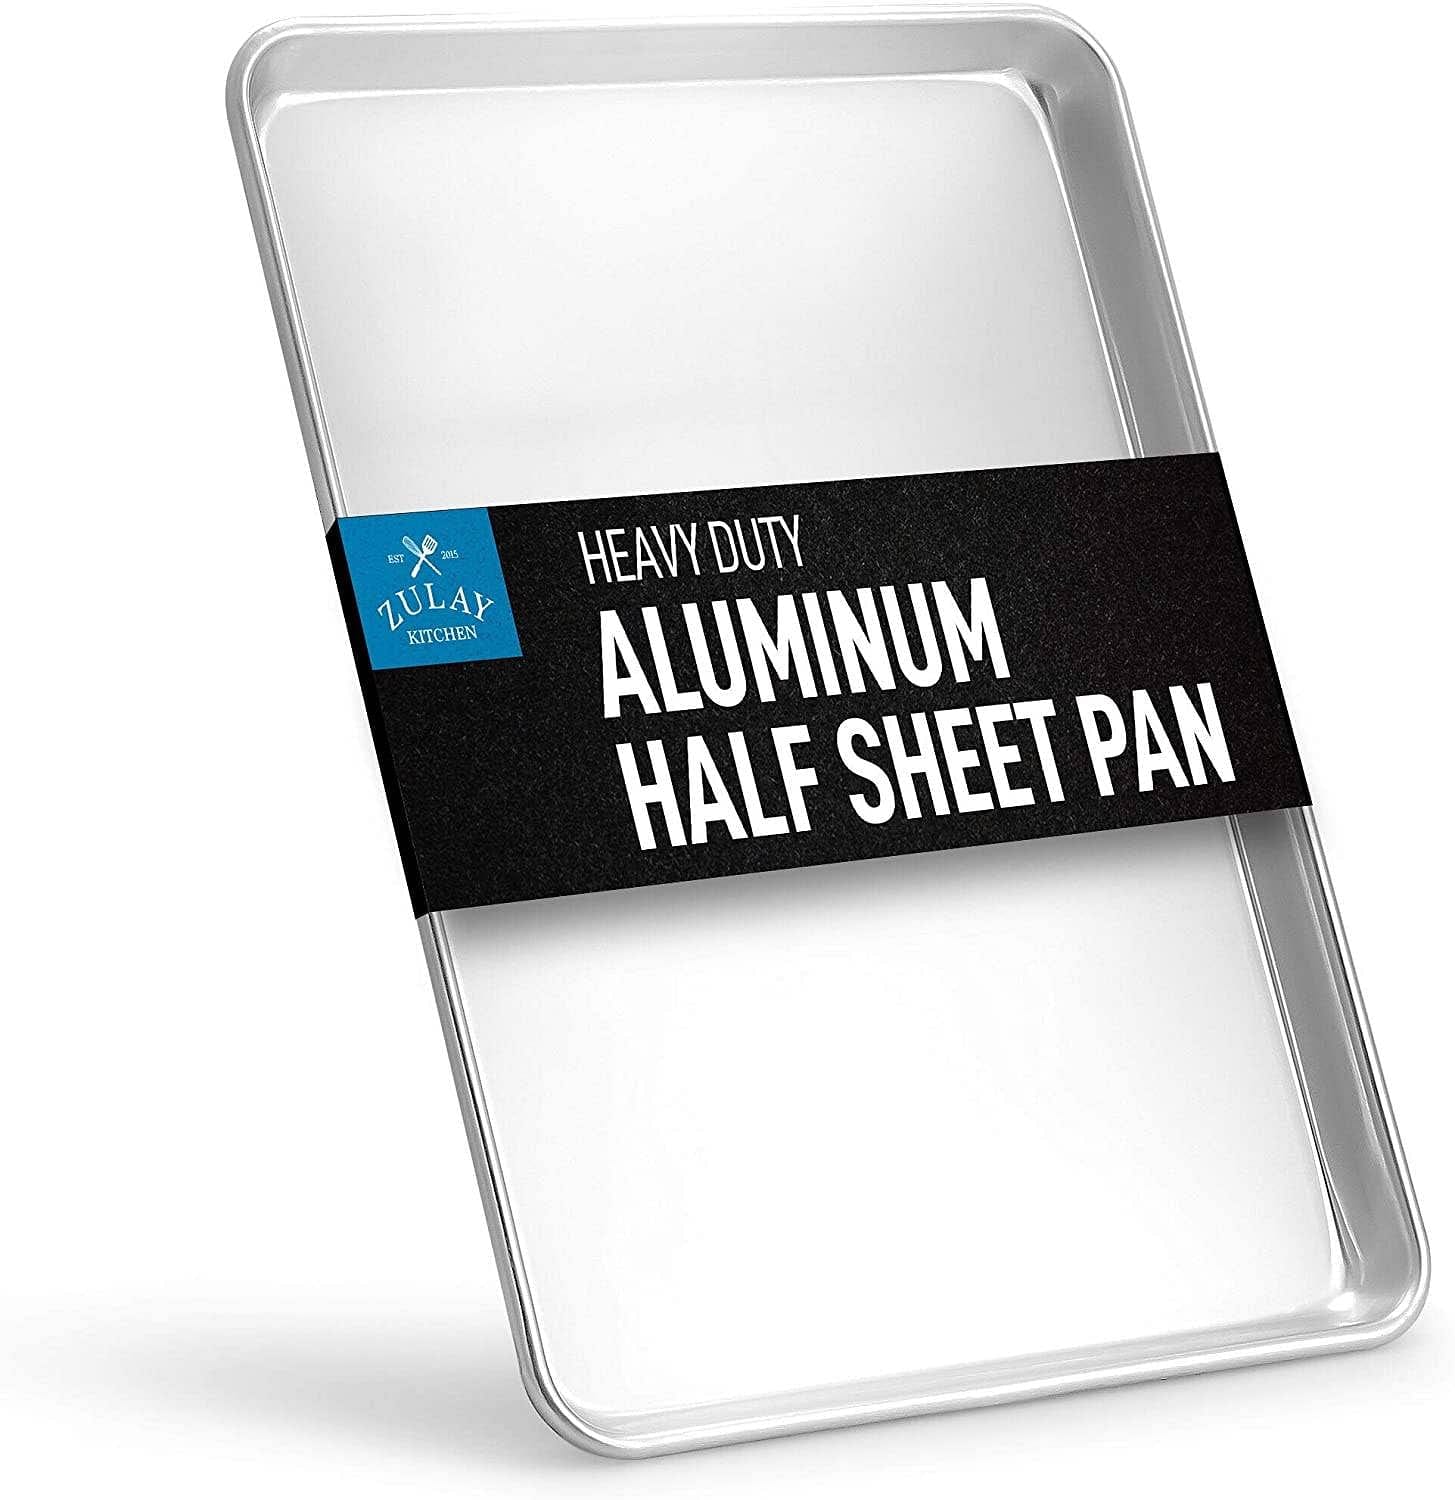 Large Sheet Pan